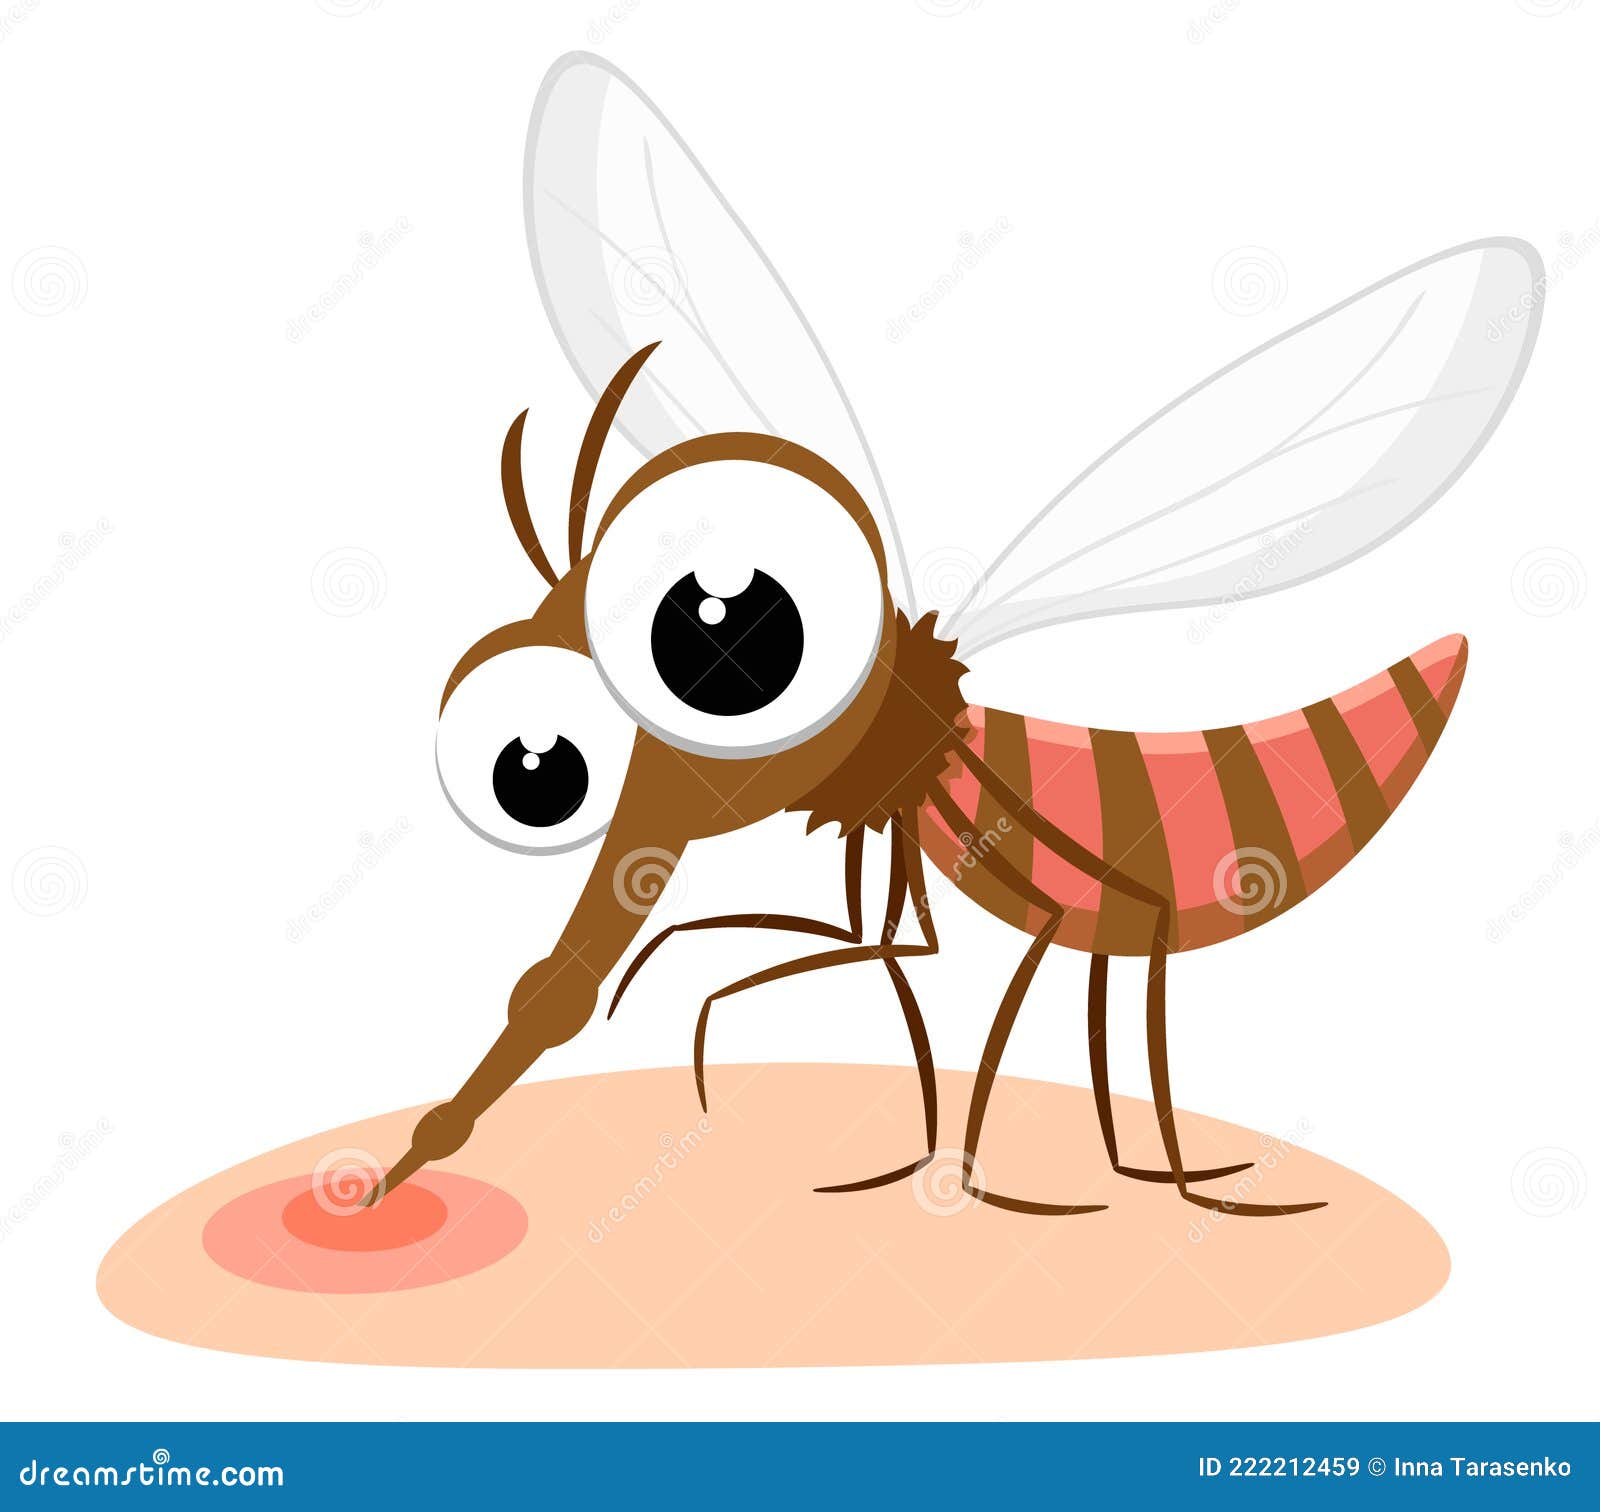 簡約卡通矢量夏日昆蟲蚊子蟲子 咬插畫元素, 一隻蚊子, 蚊蟲咬, 手繪蚊子素材圖案，PSD和PNG圖片免費下載